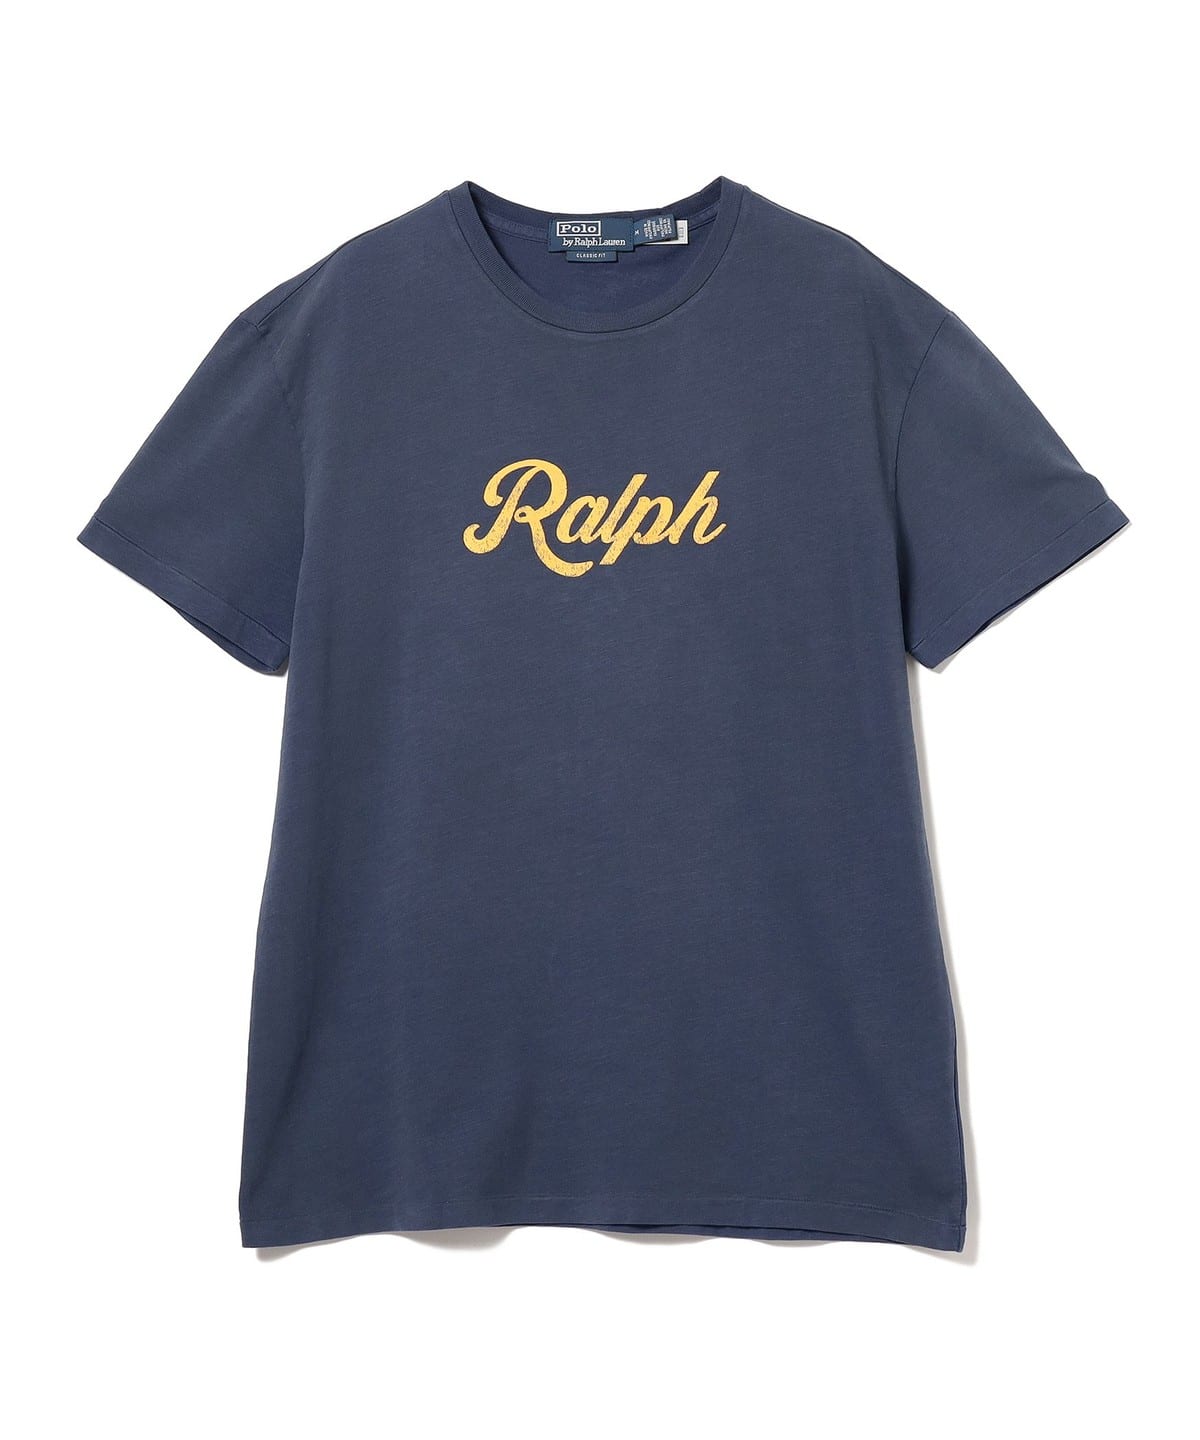 POLO RALPH LAUREN for BEAMS ヘビーウェイトTシャツ - Tシャツ ...